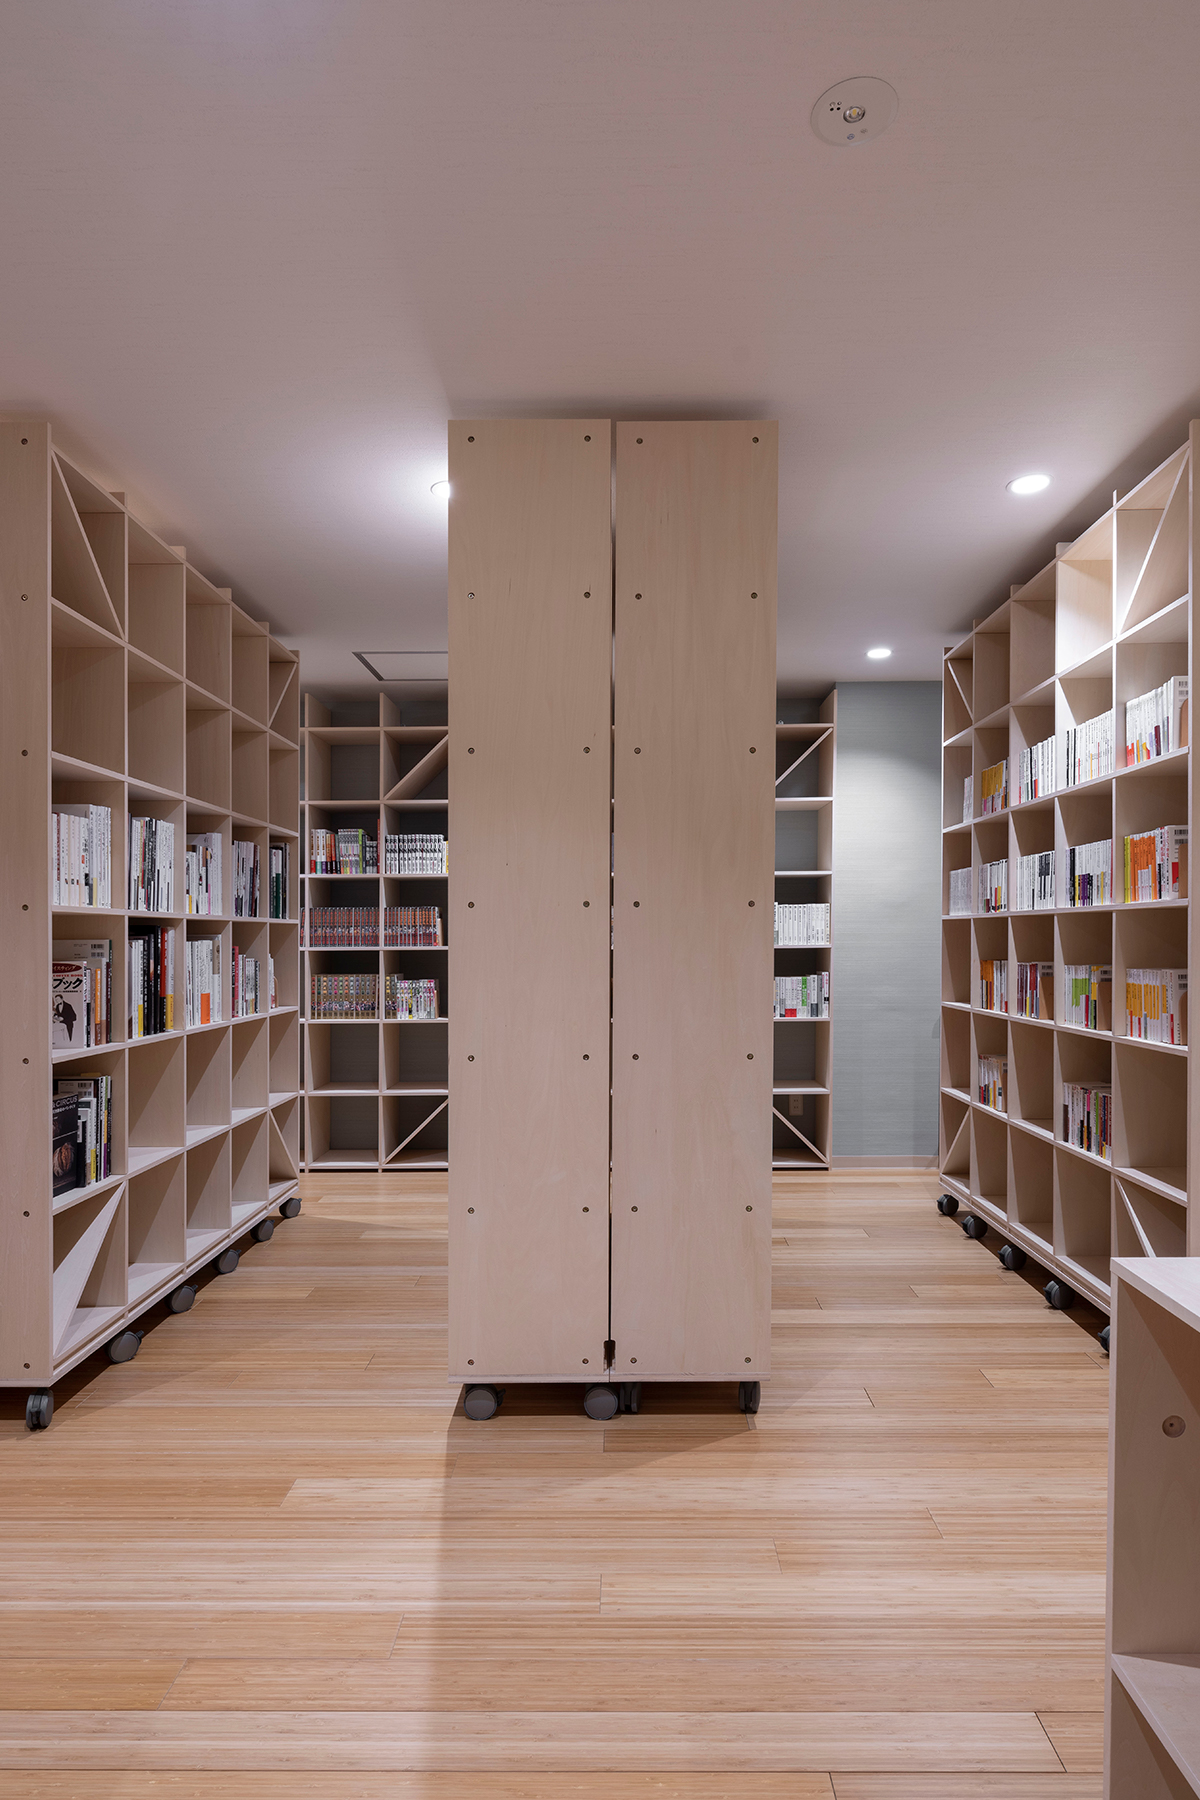 移動式本棚をオフィスの書架スペースに採用している事例